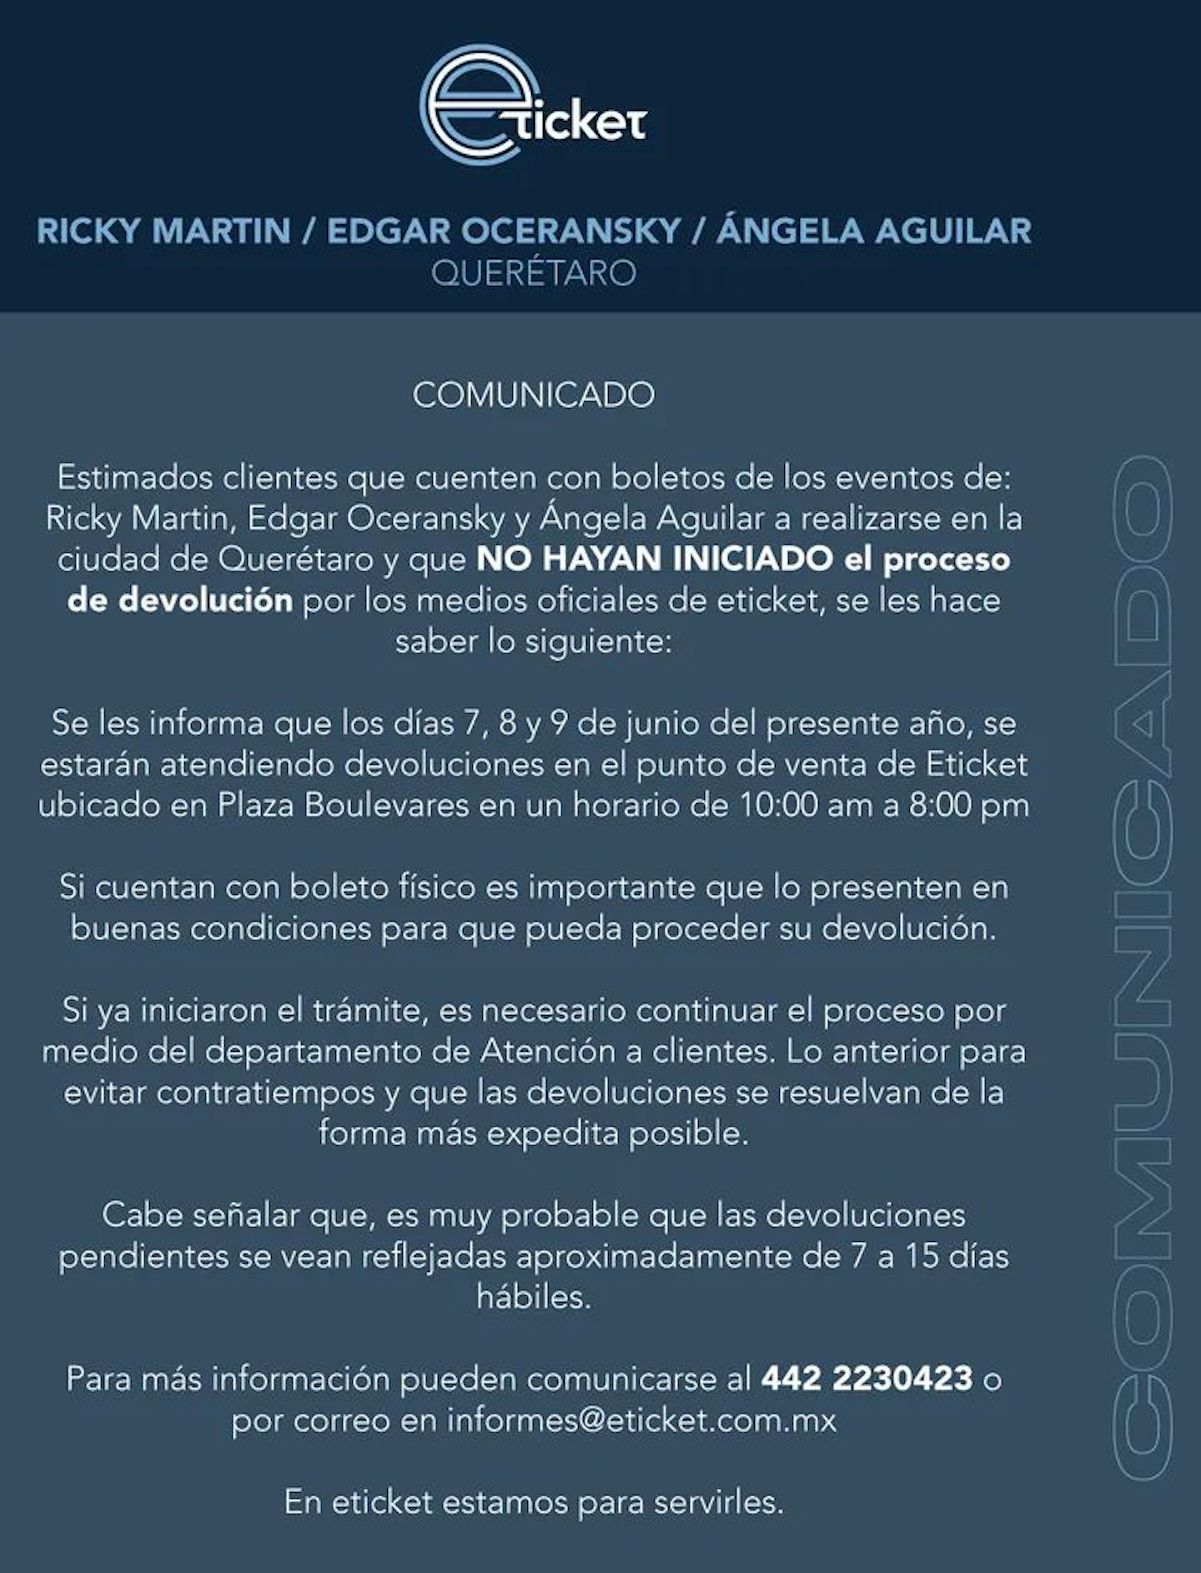 Anuncian reembolso de los conciertos de Ricky Martin, Edgar Oceransky y Ángela Aguilar en Querétaro